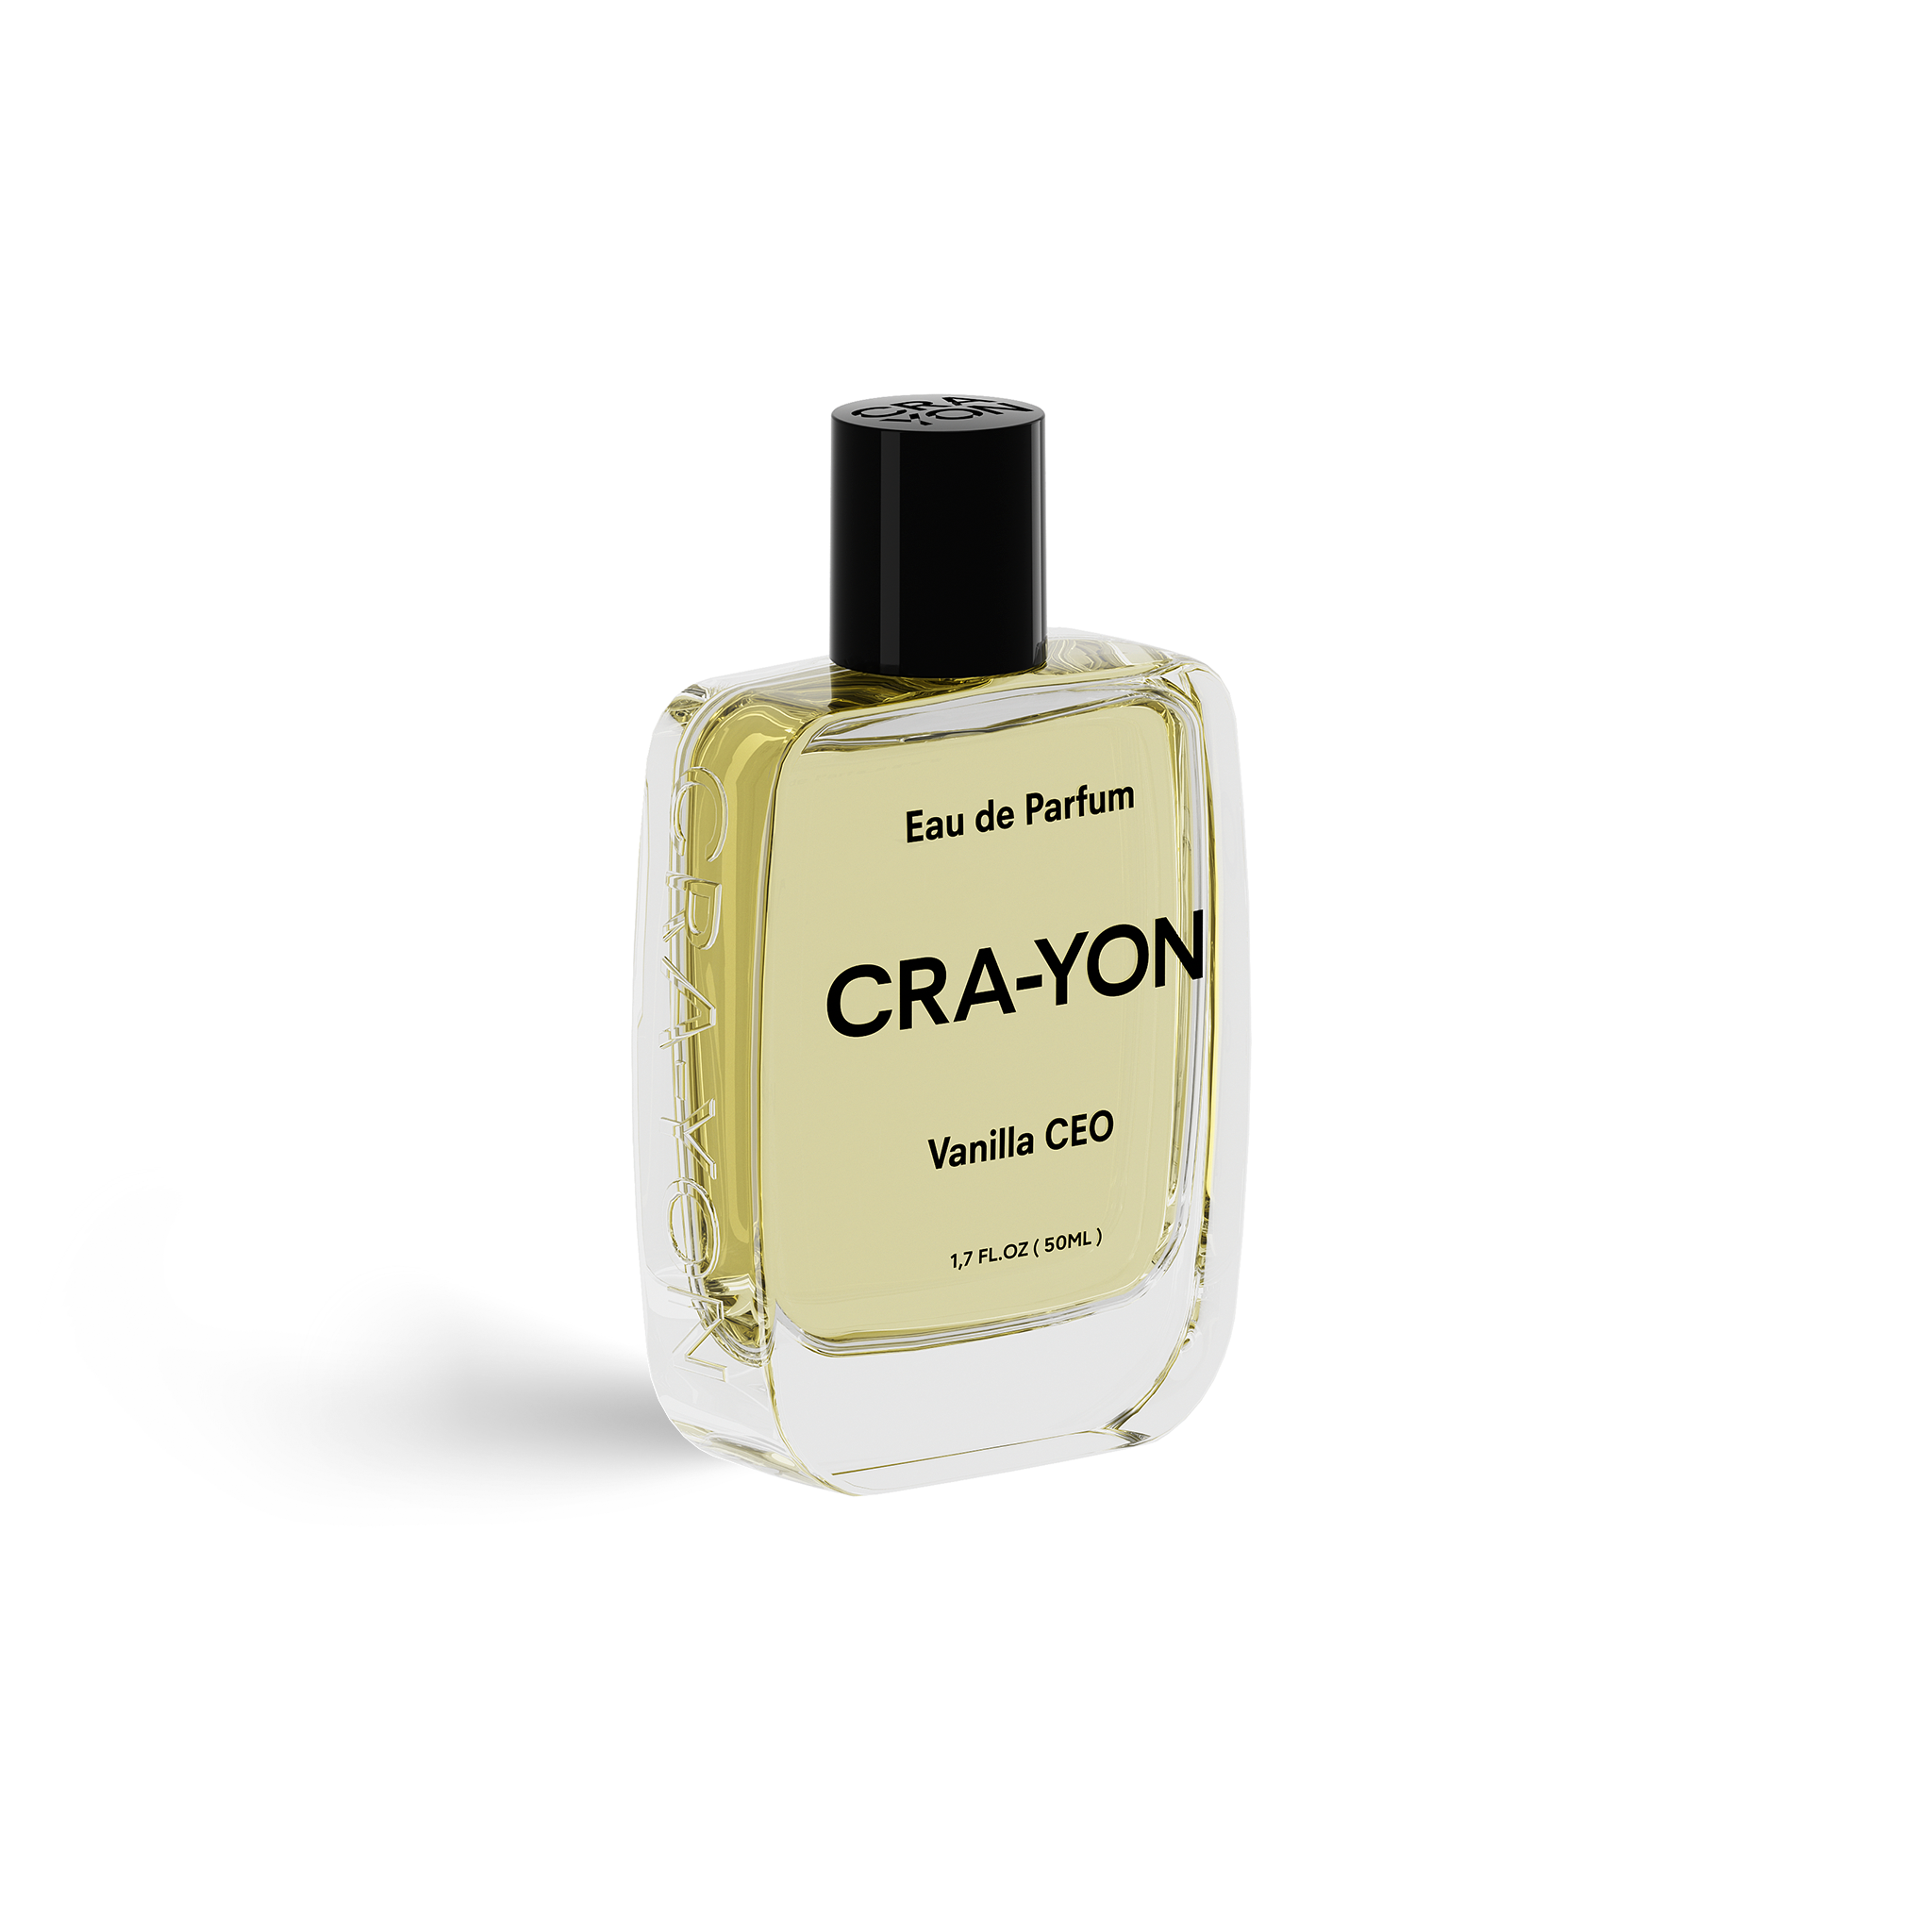 CRA-YON Vanilla CEO Eau de Parfum - Stèle